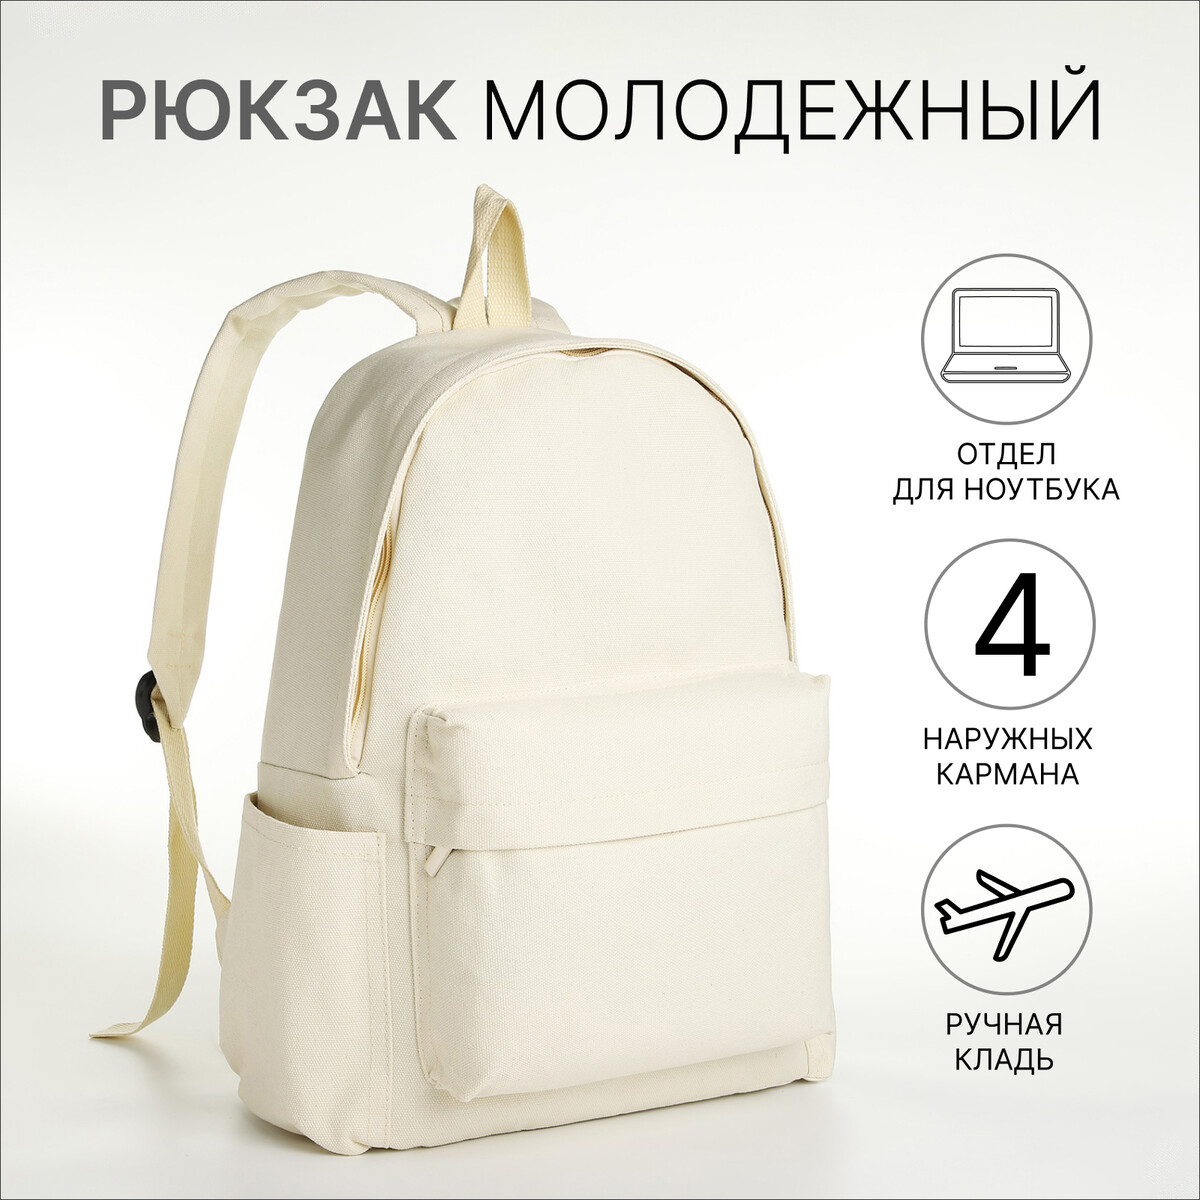 Рюкзак молодежный из текстиля на молнии, 4 кармана, цвет молочный рюкзак молодежный из текстиля на молнии 4 кармана молочный